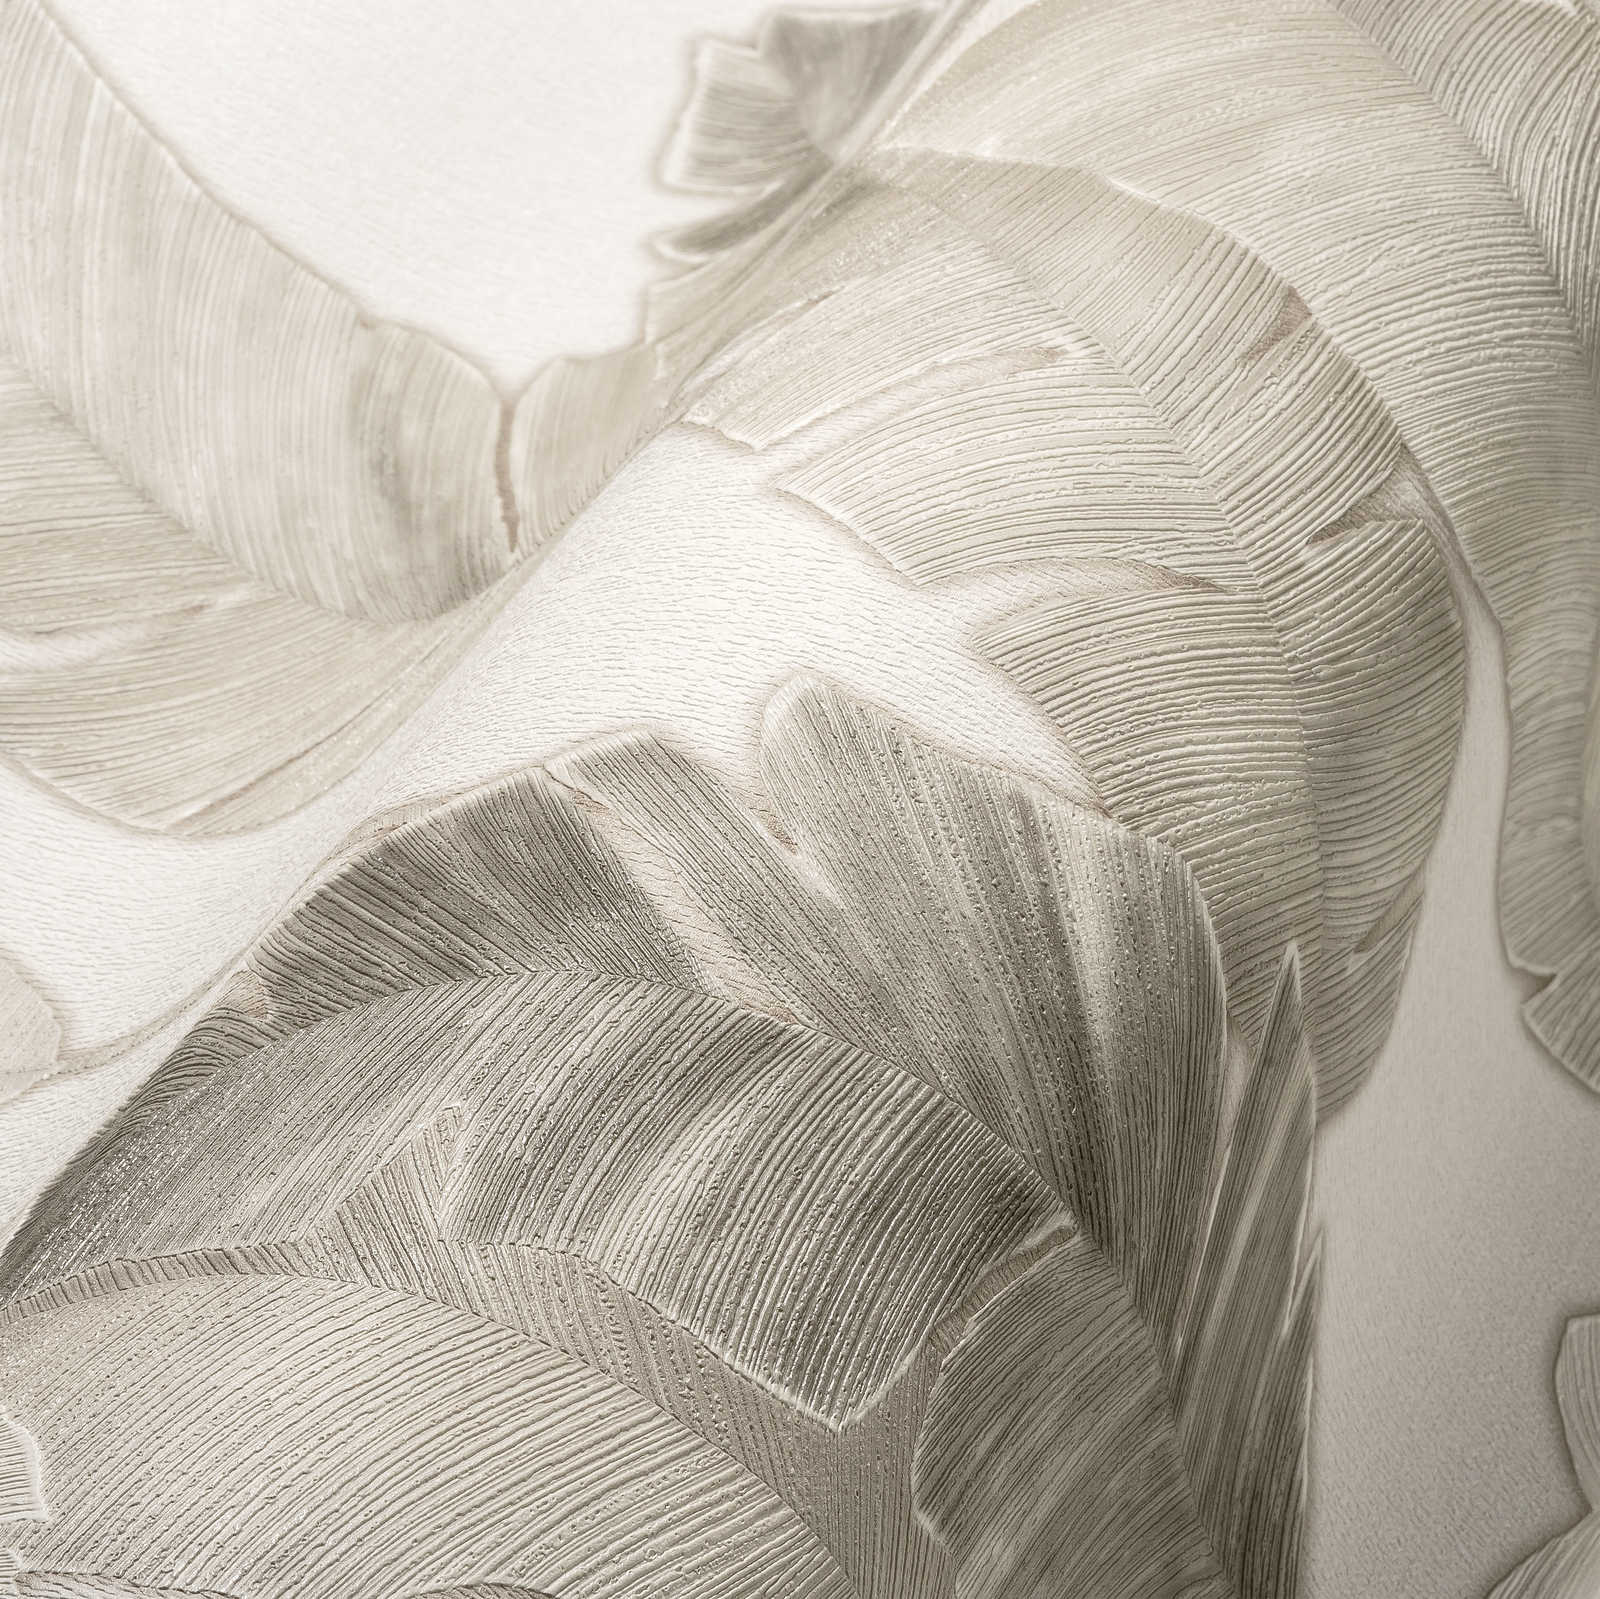             Vliesbehang met subtiele palmbladeren - wit, beige, grijs
        